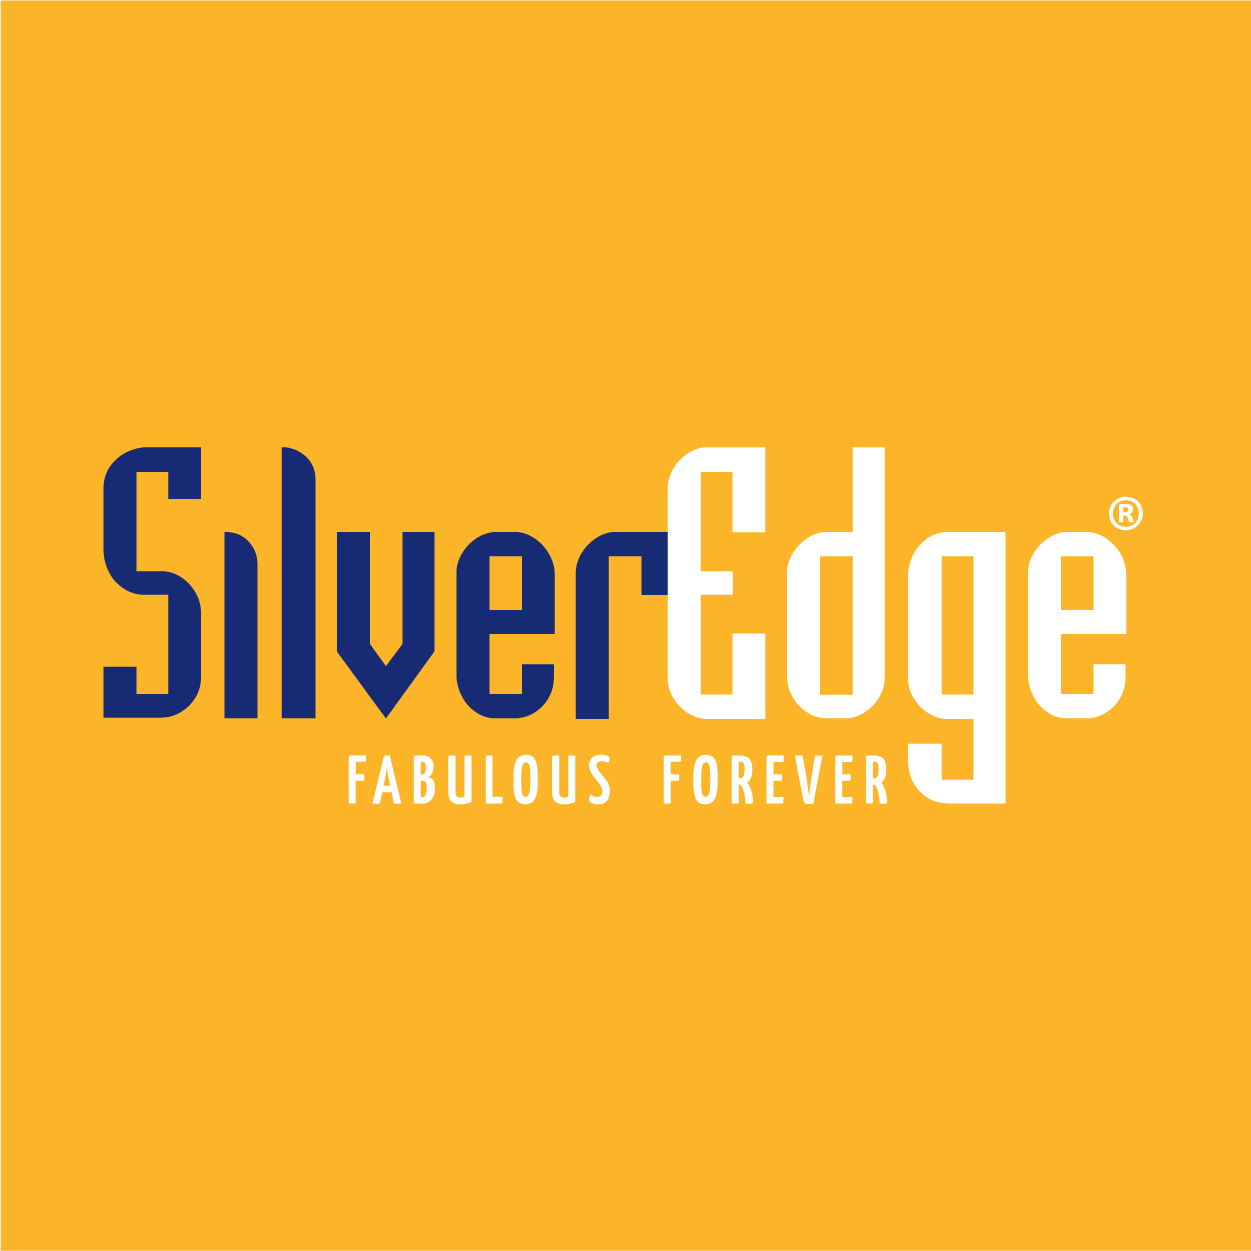 SilverEdge Logo 300 x 300px 08